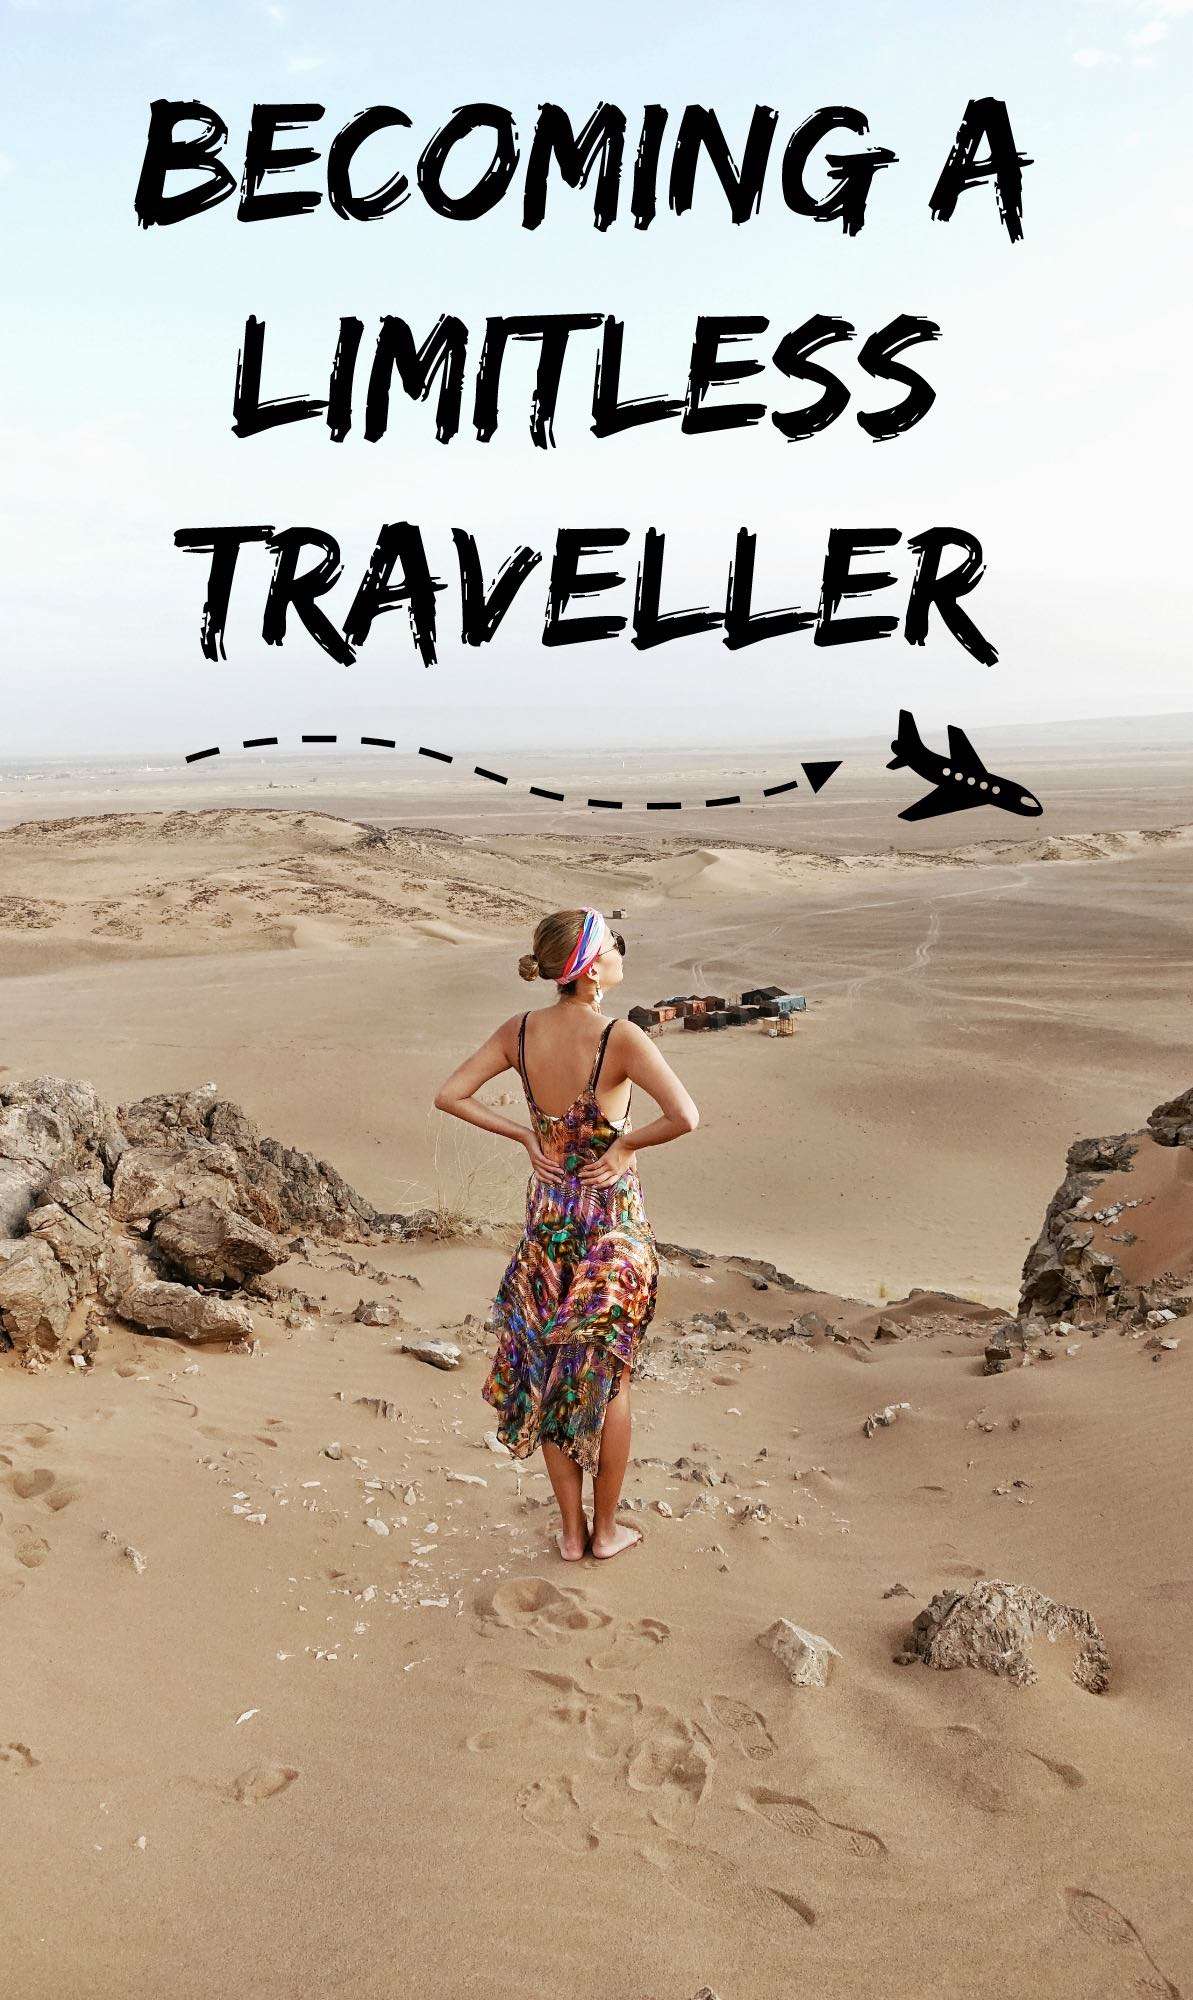 Becoming a limitless traveller